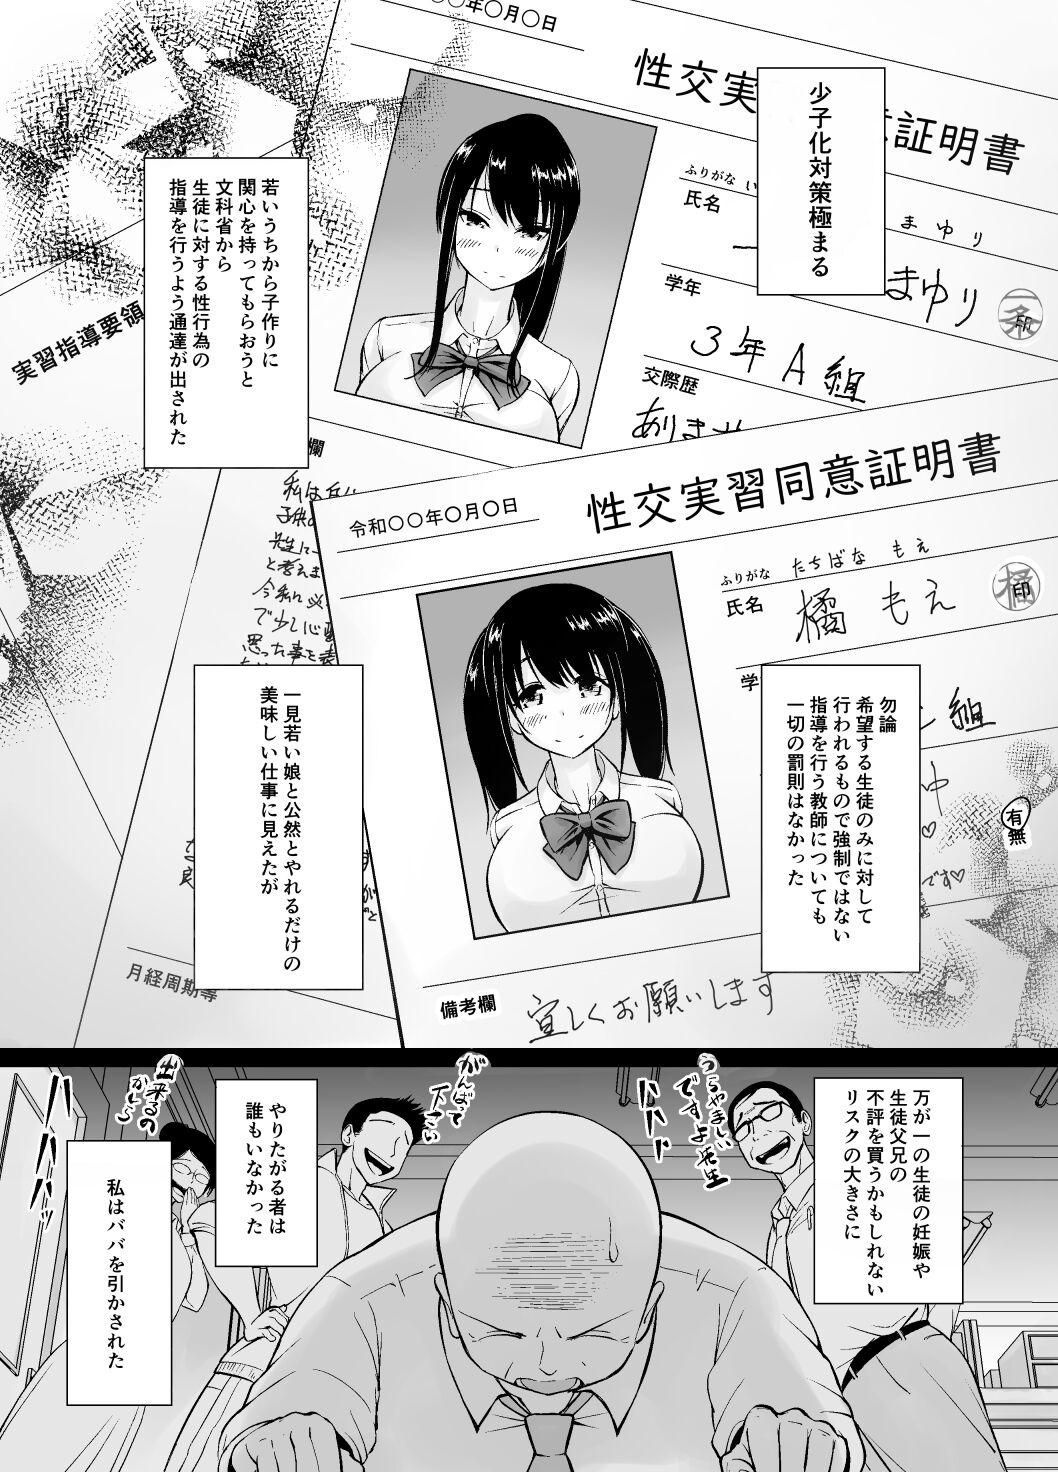 8teen Meimon jogakuin no ko tsukuri kobetsu jisshuu - Original Culazo - Page 2